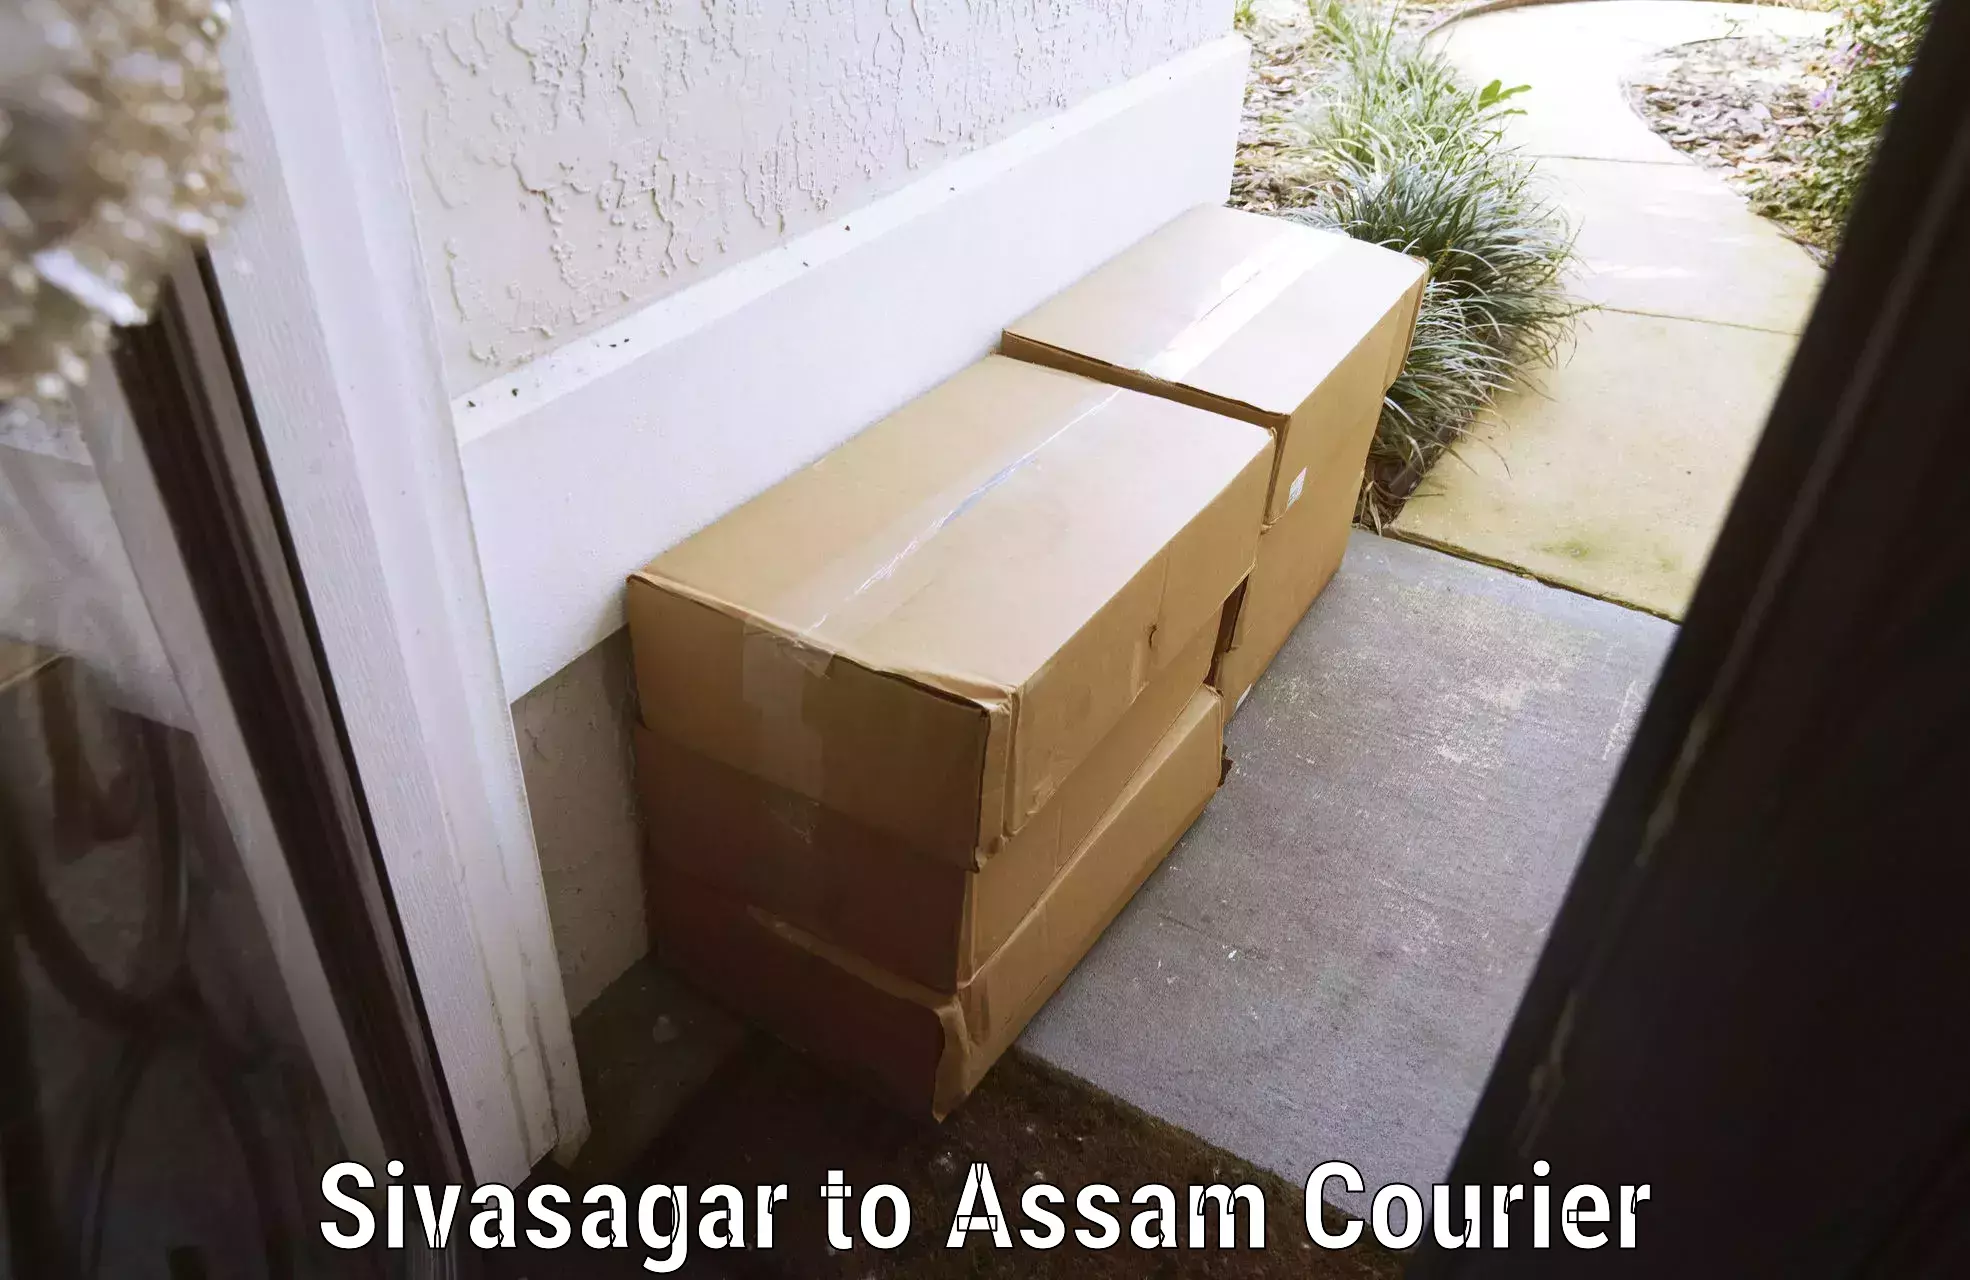 Baggage relocation service Sivasagar to Rowta